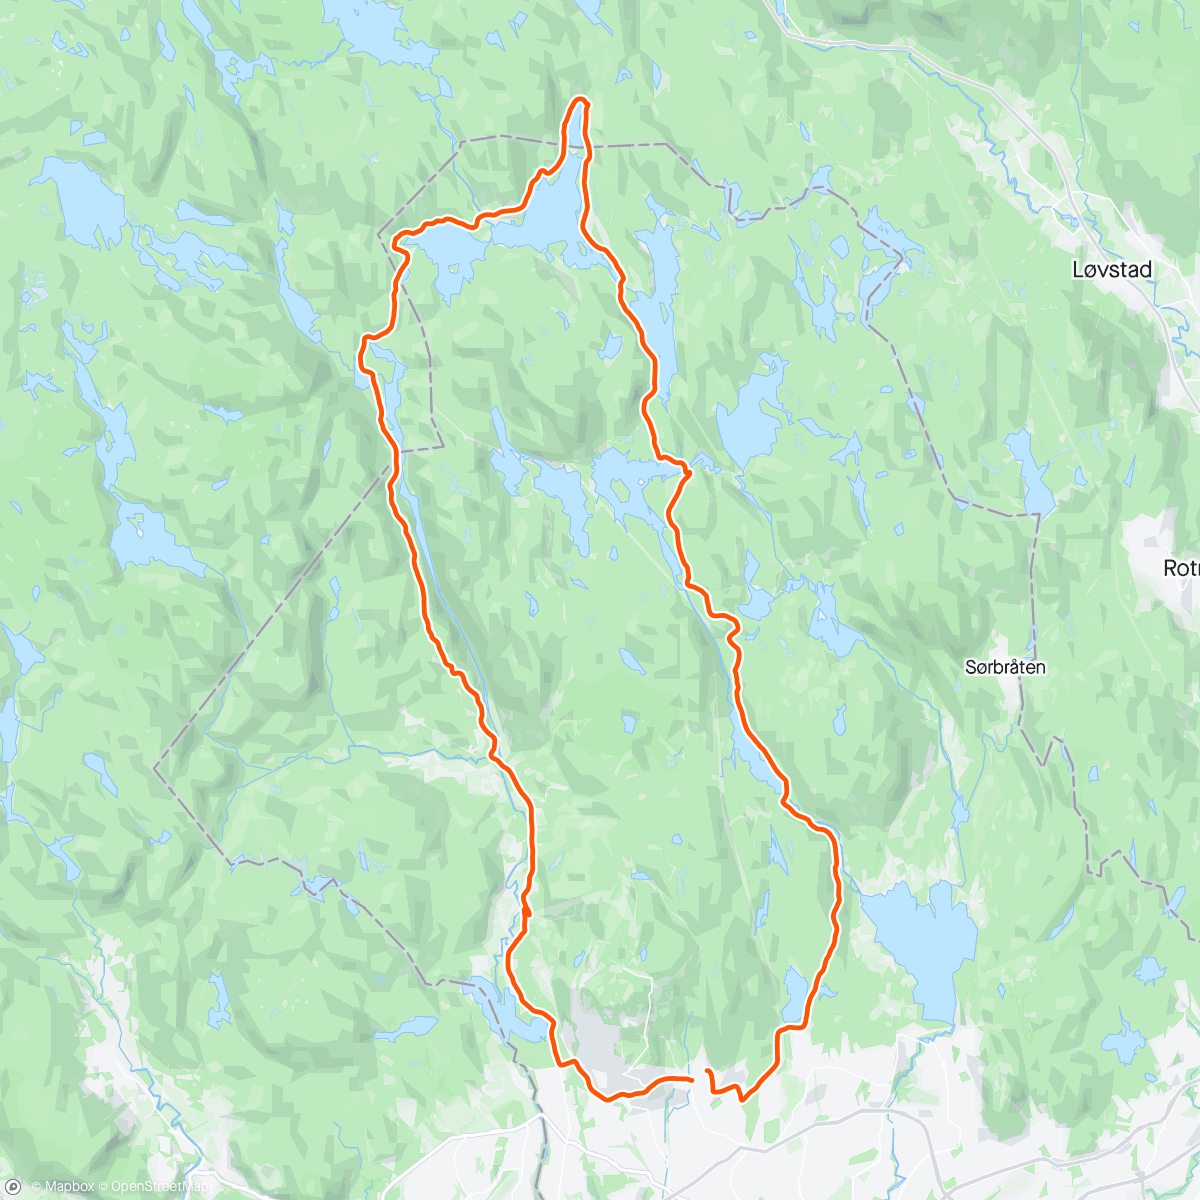 「Sandungen 1. mai. Godt nytt treningsår til alle skiløpere!!🥰🥰🥰」活動的地圖